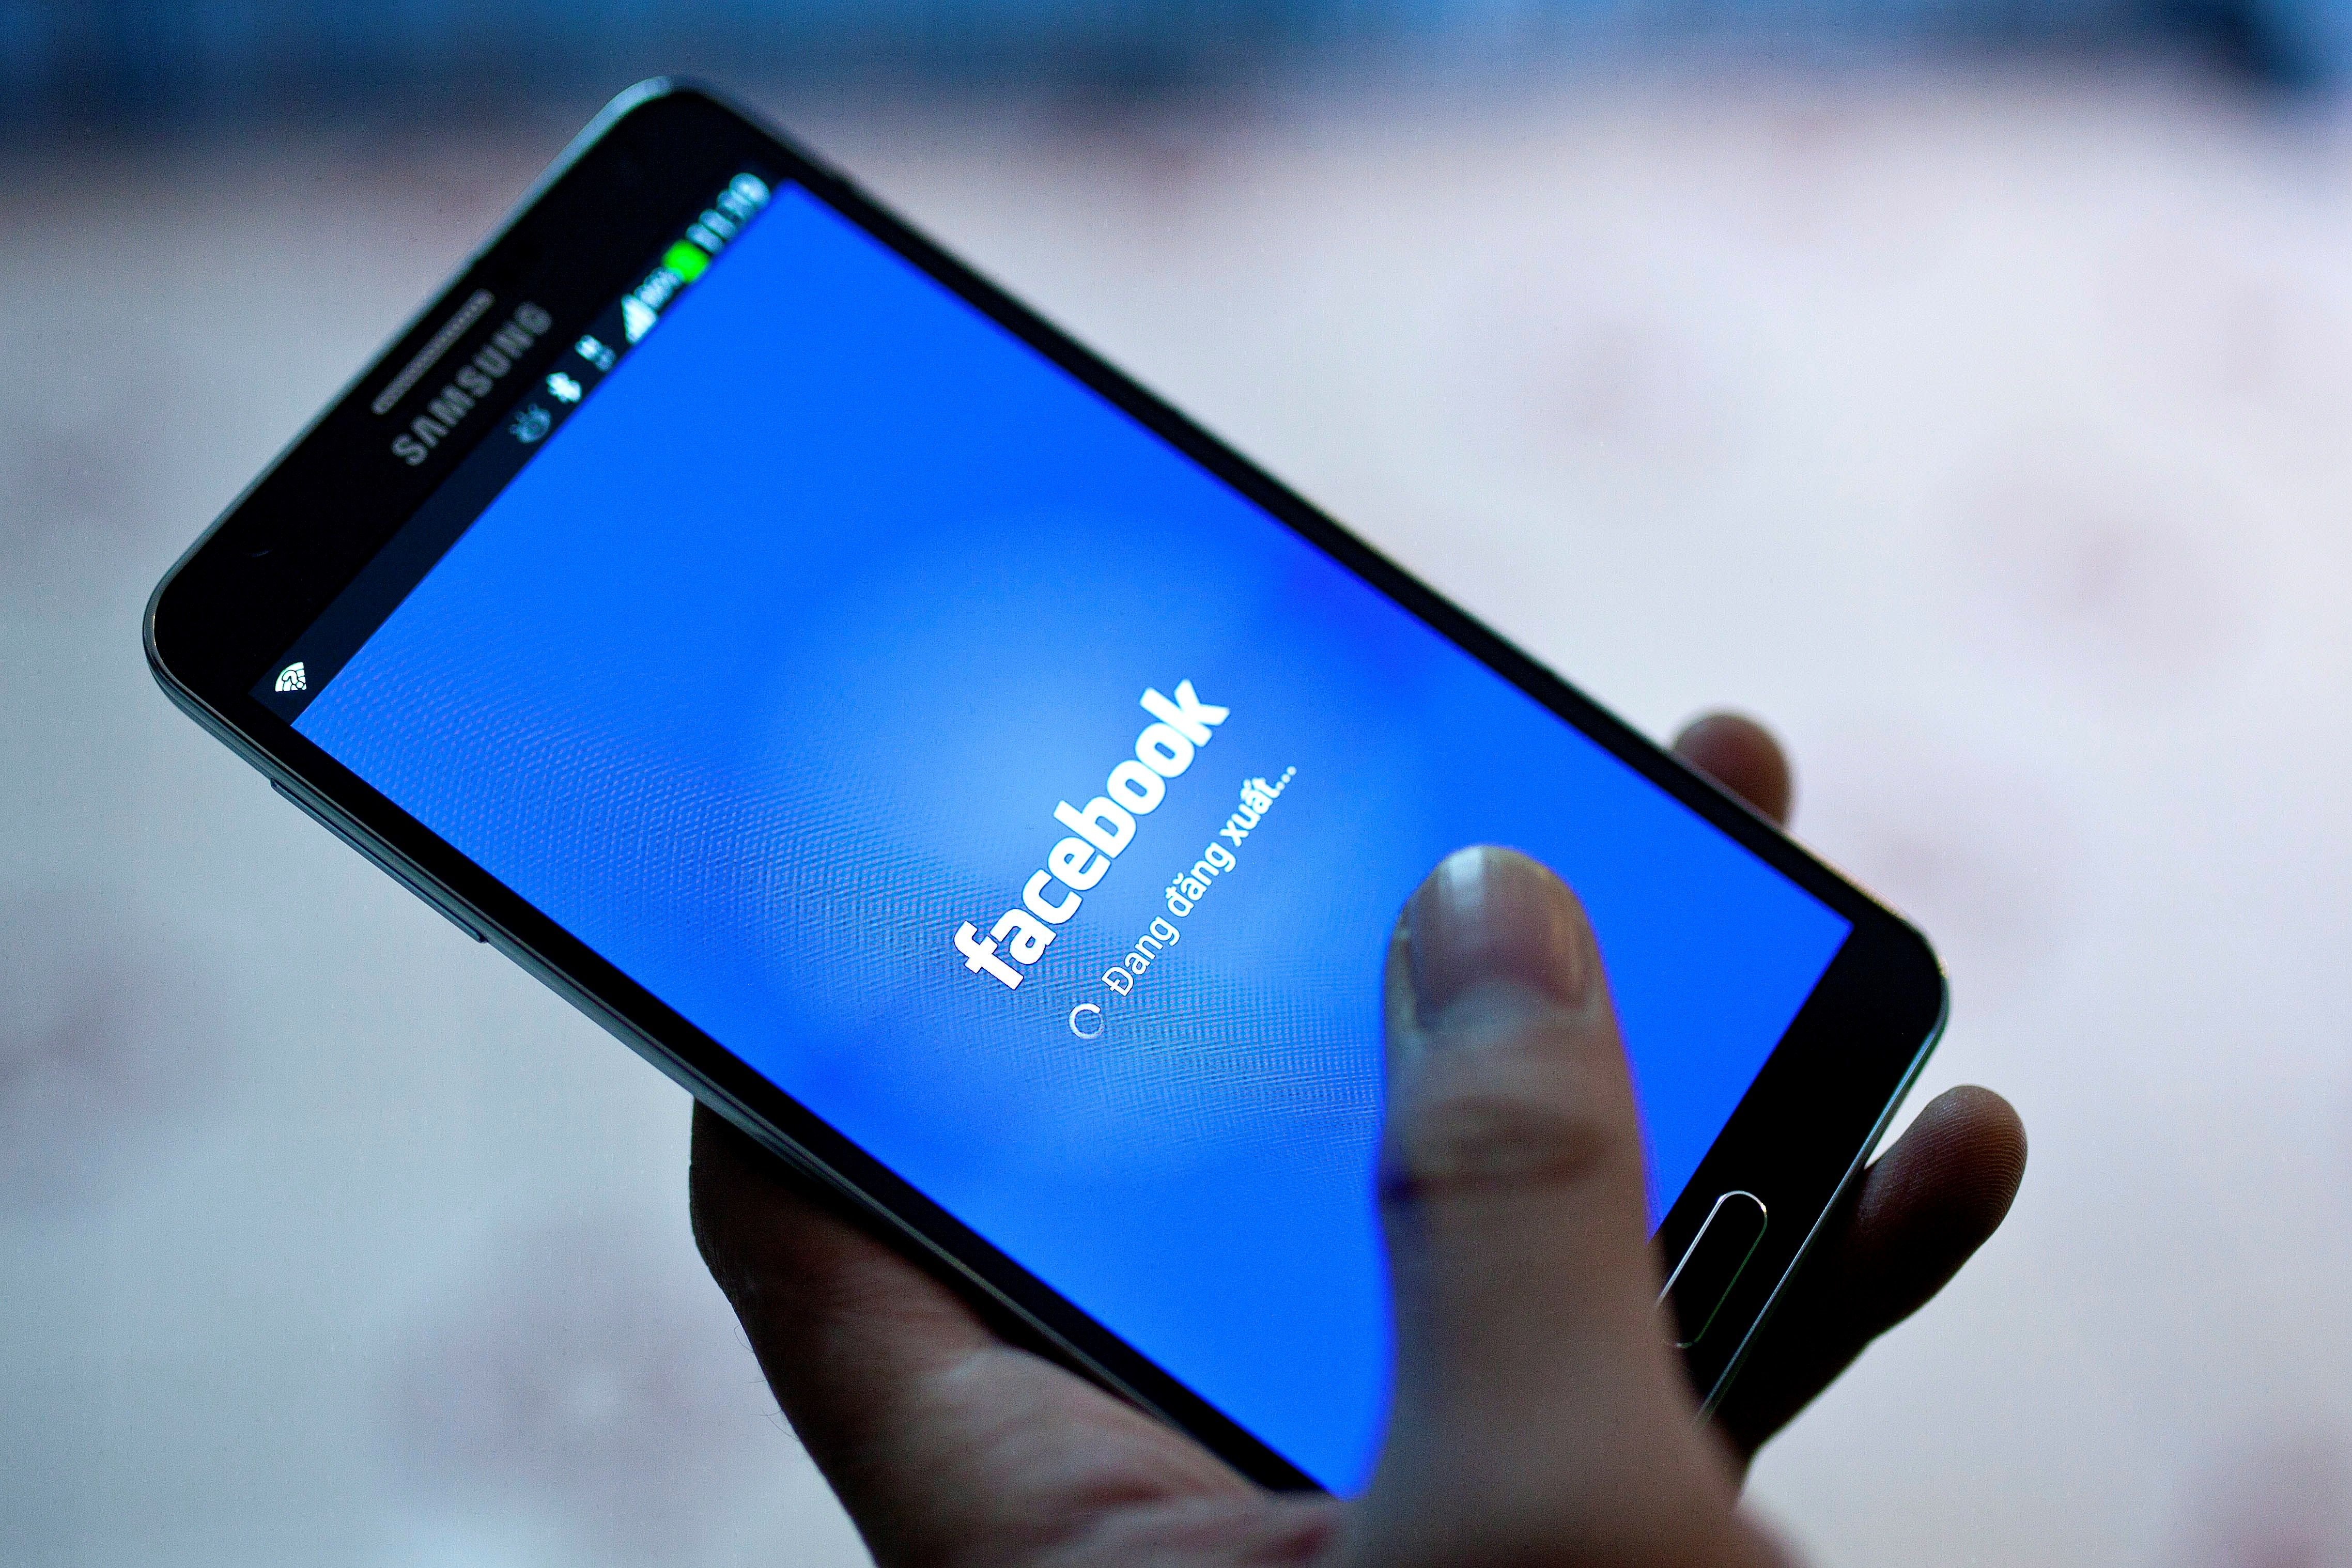 Facebook recibe un ciberataque a 50 millones de cuentas y se desploma en bolsa